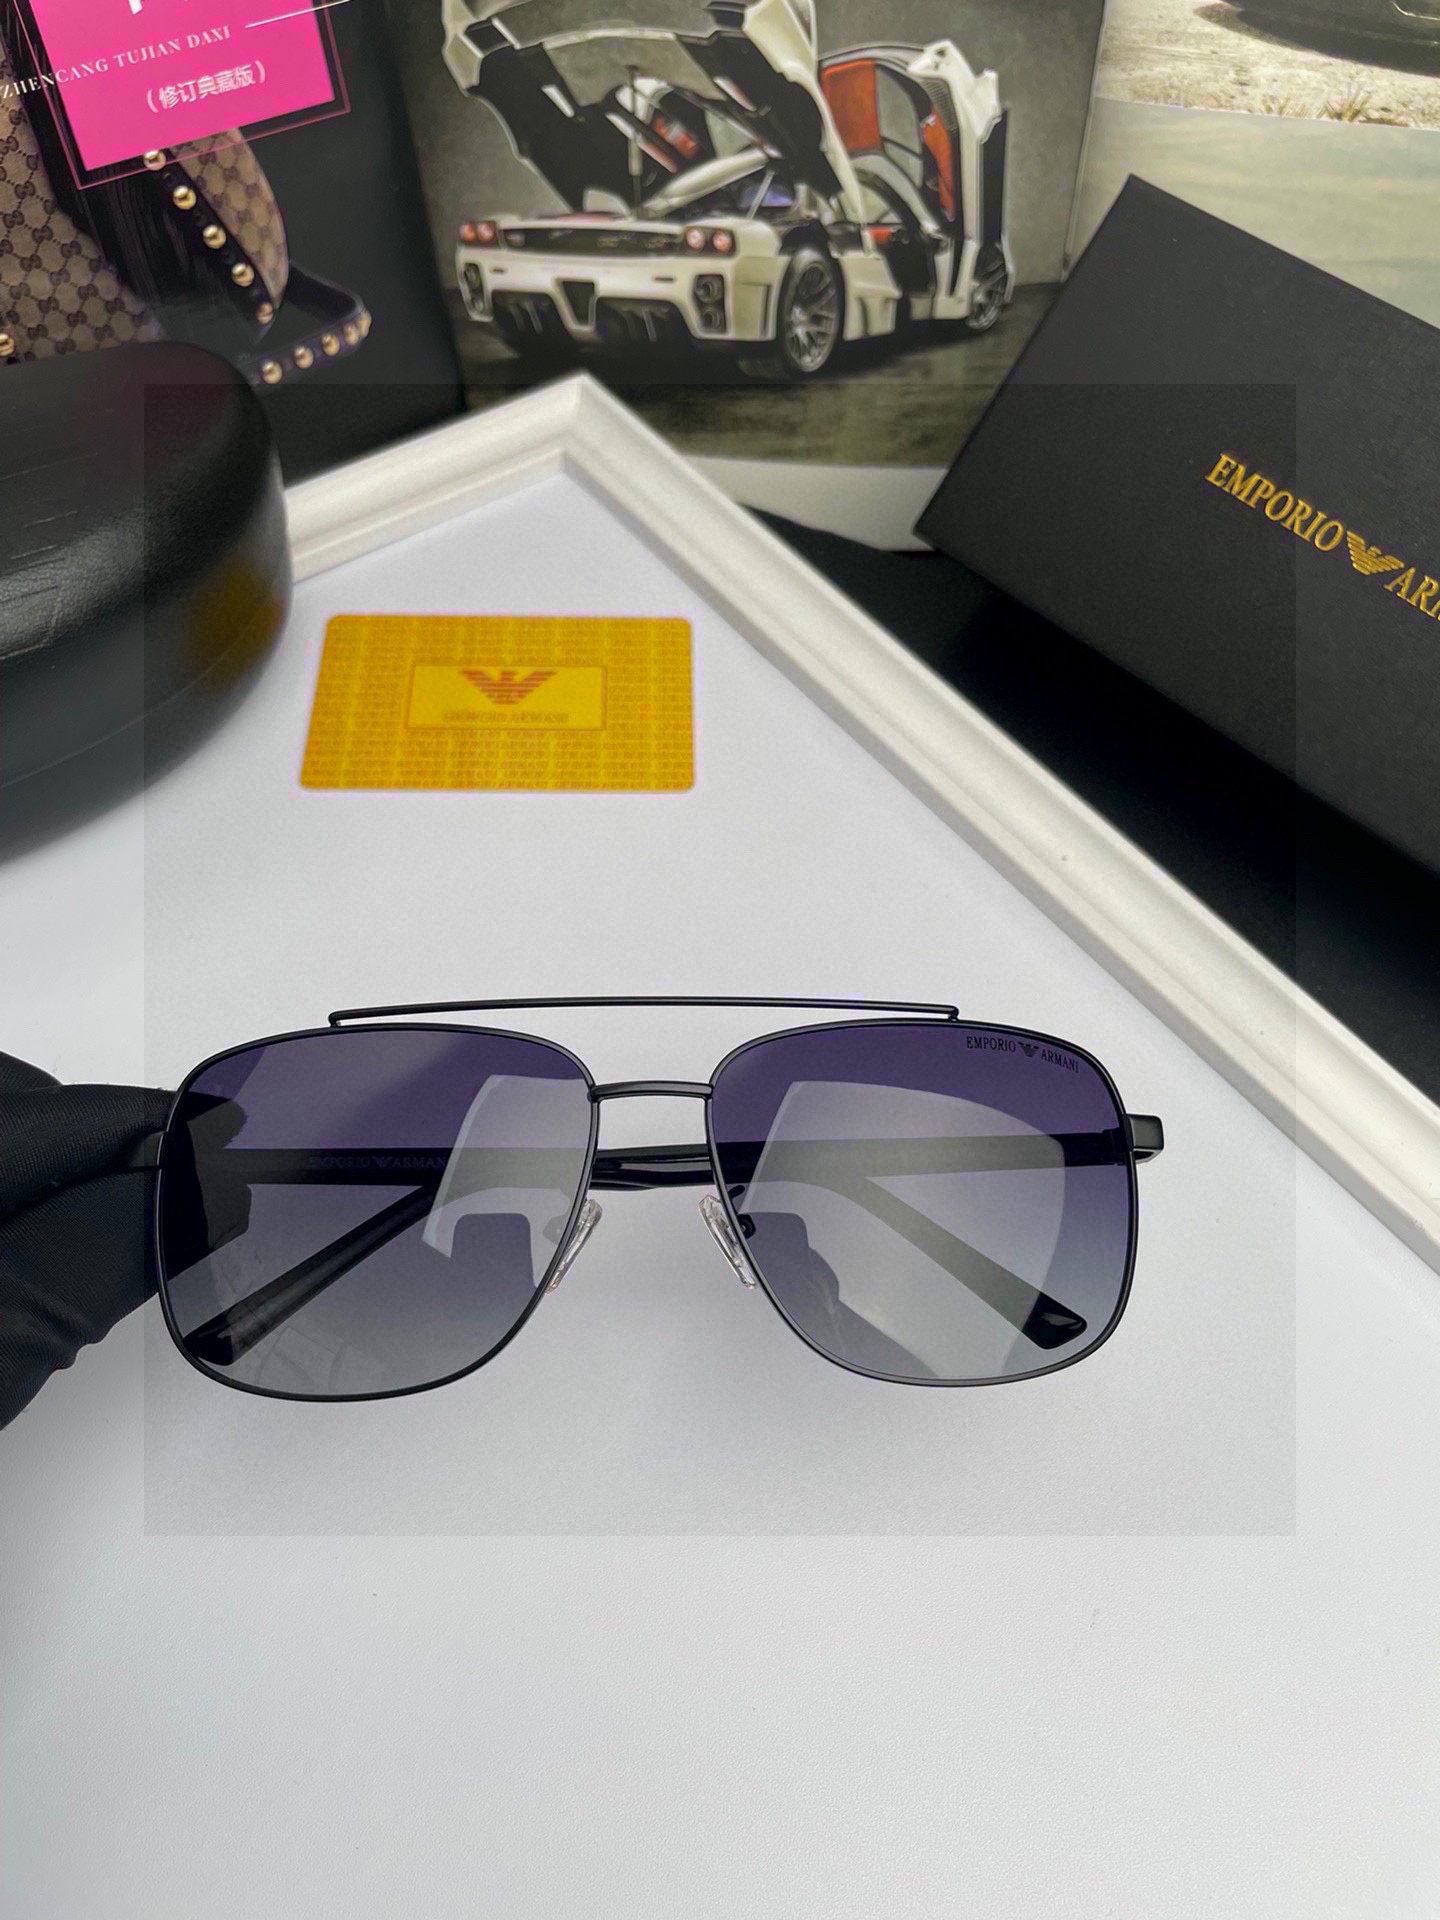 新款品牌阿玛尼ARMANI原单品质男士偏光太阳镜️材质高清宝丽来偏光镜片进口合金金属镜框板材印字logo